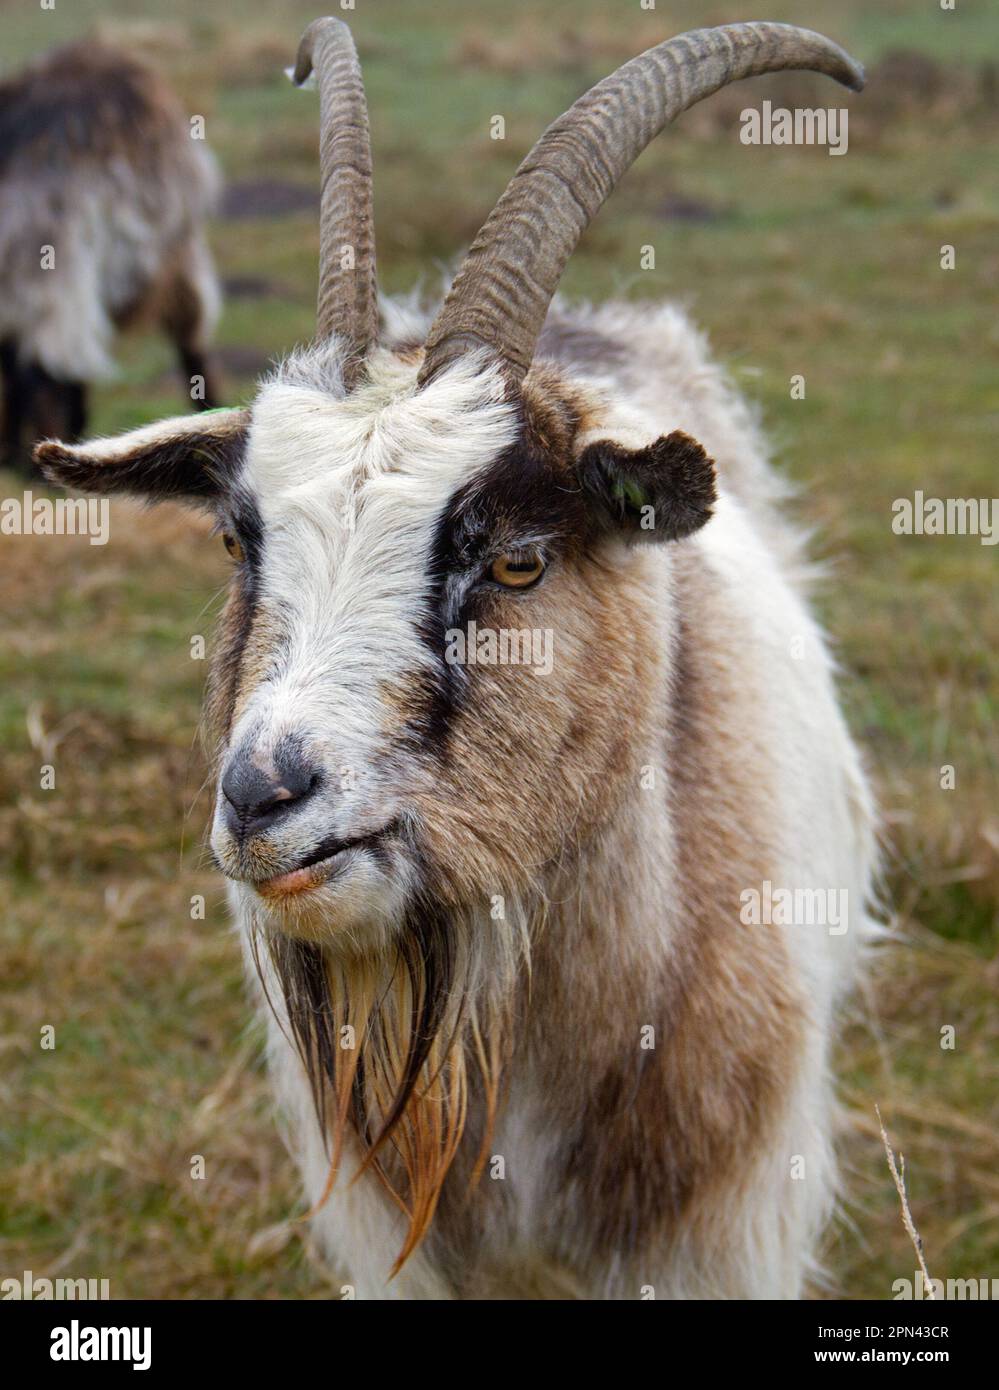 Ritratto di capra buck della Landrace olandese, una razza olandese tradizionale Foto Stock